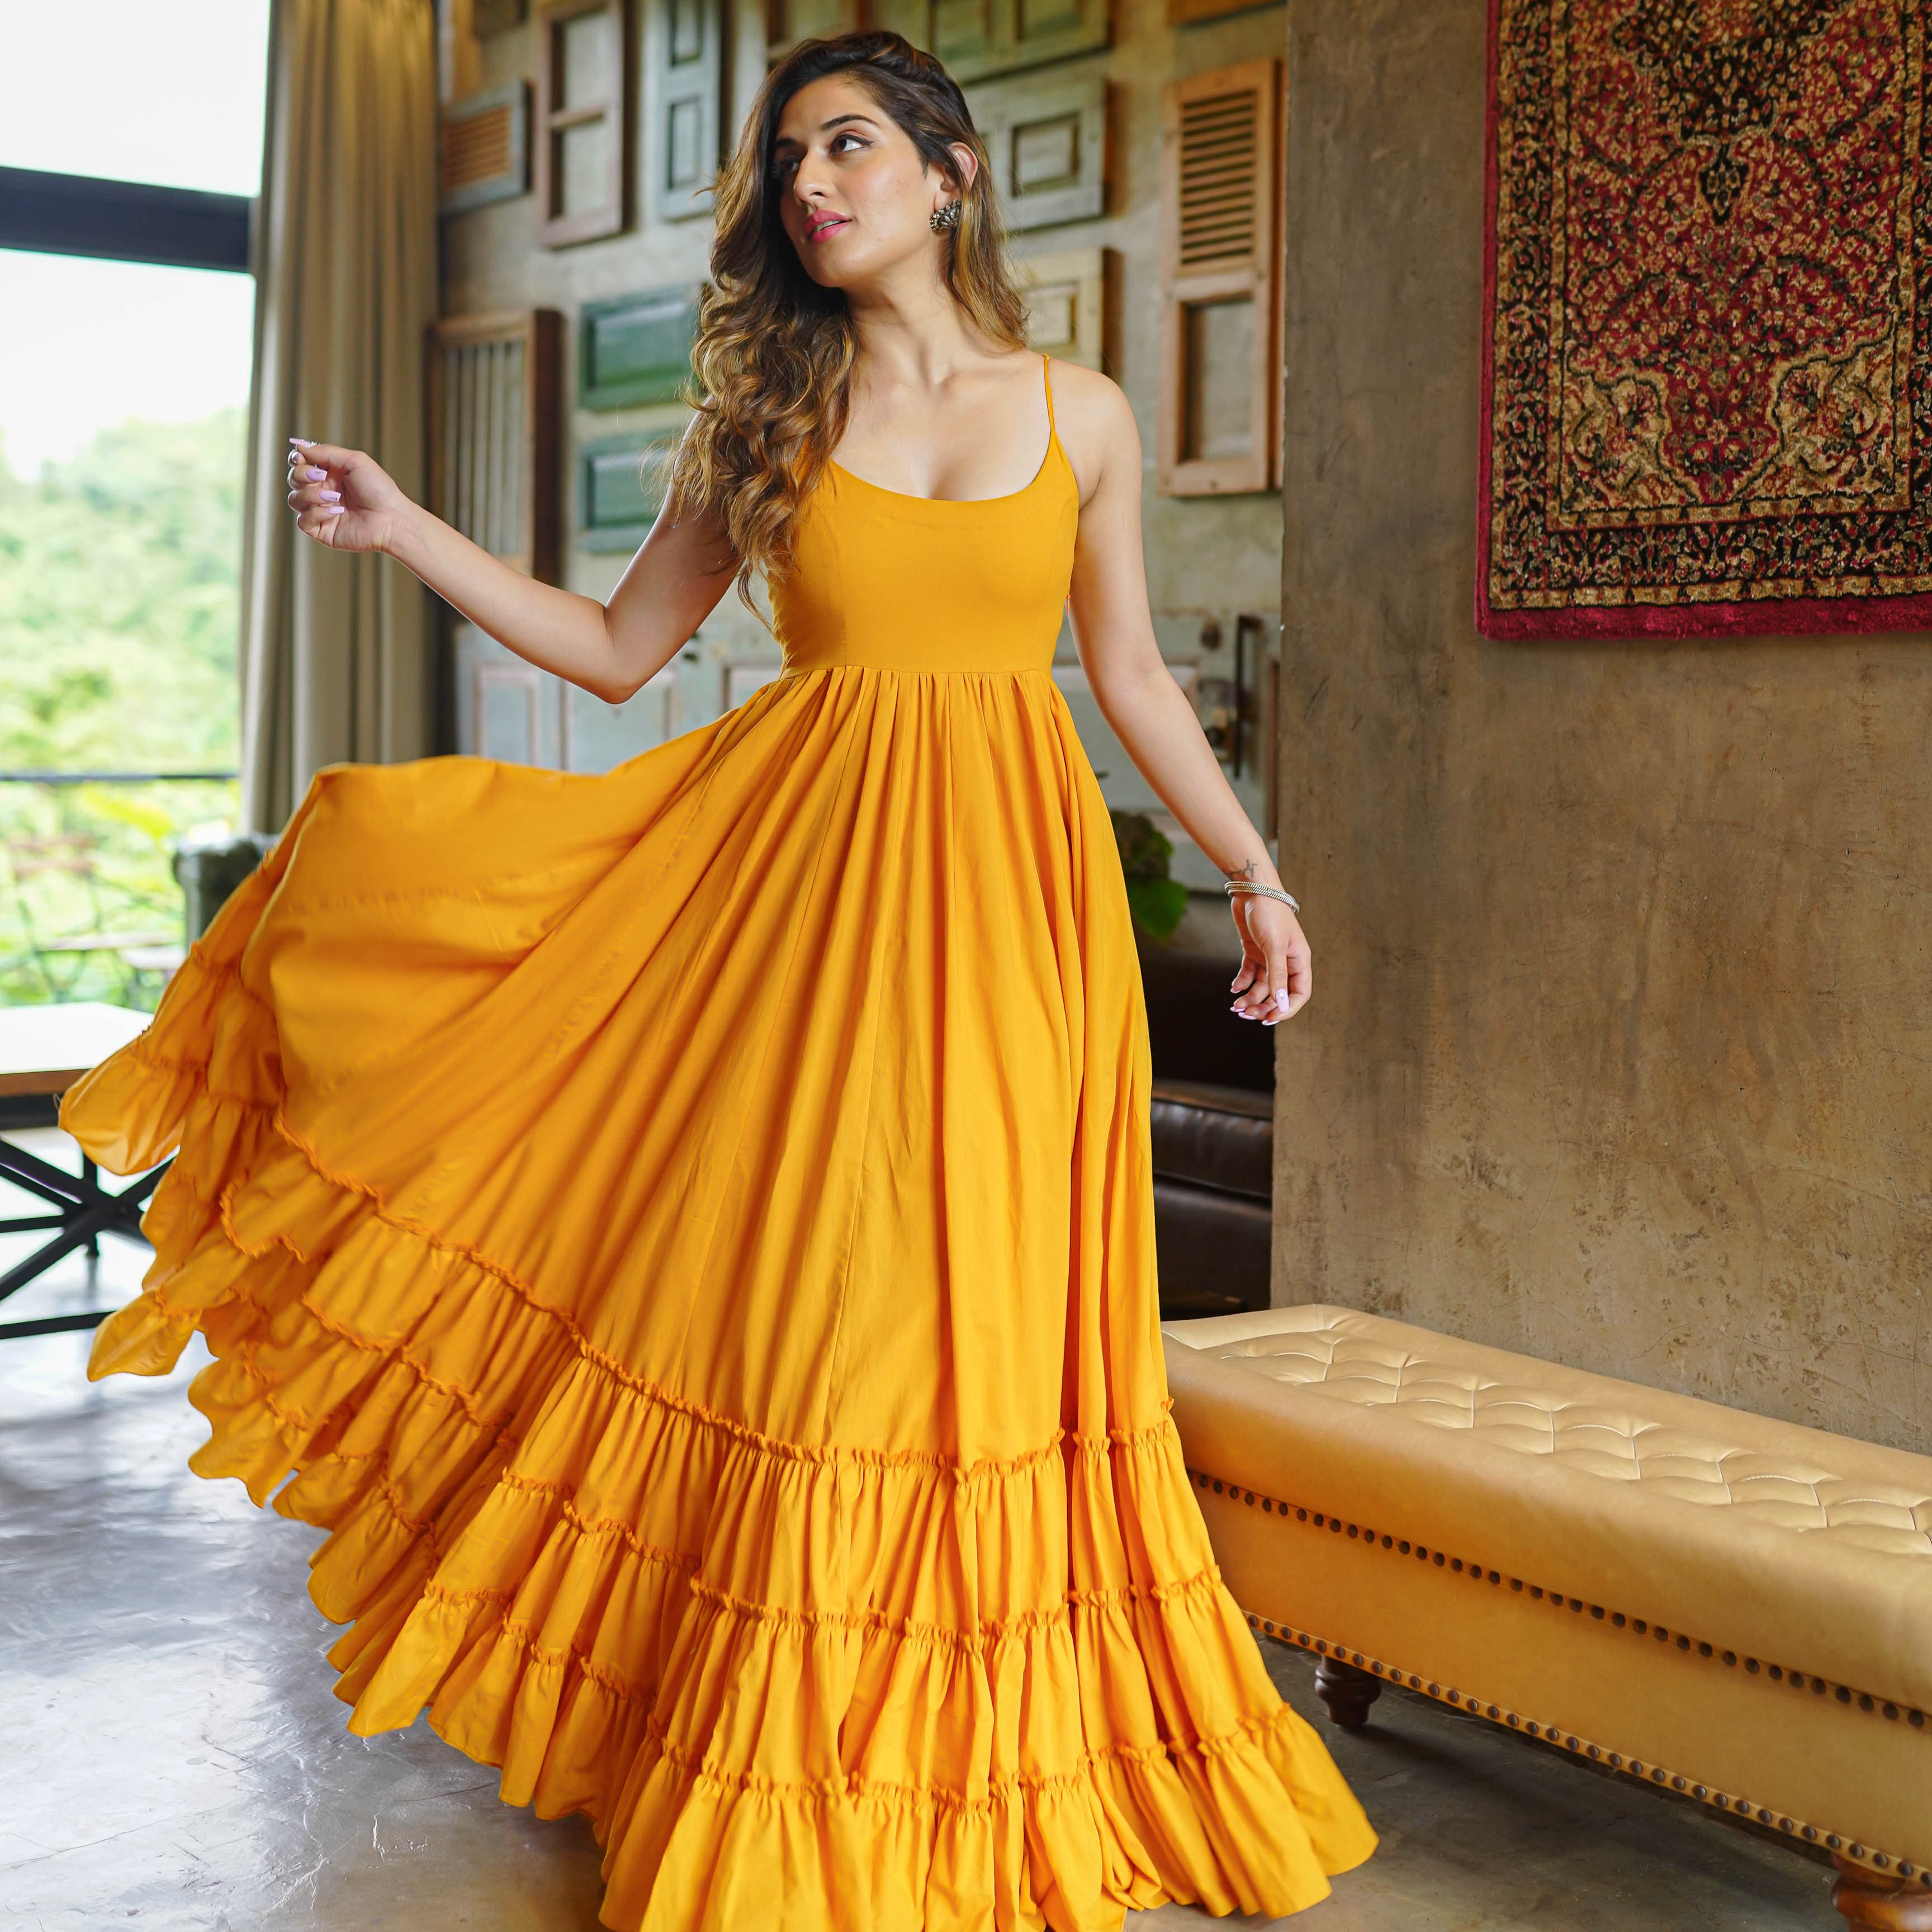 Designer dresses - Buy ethnic dresses online for women | The right cut